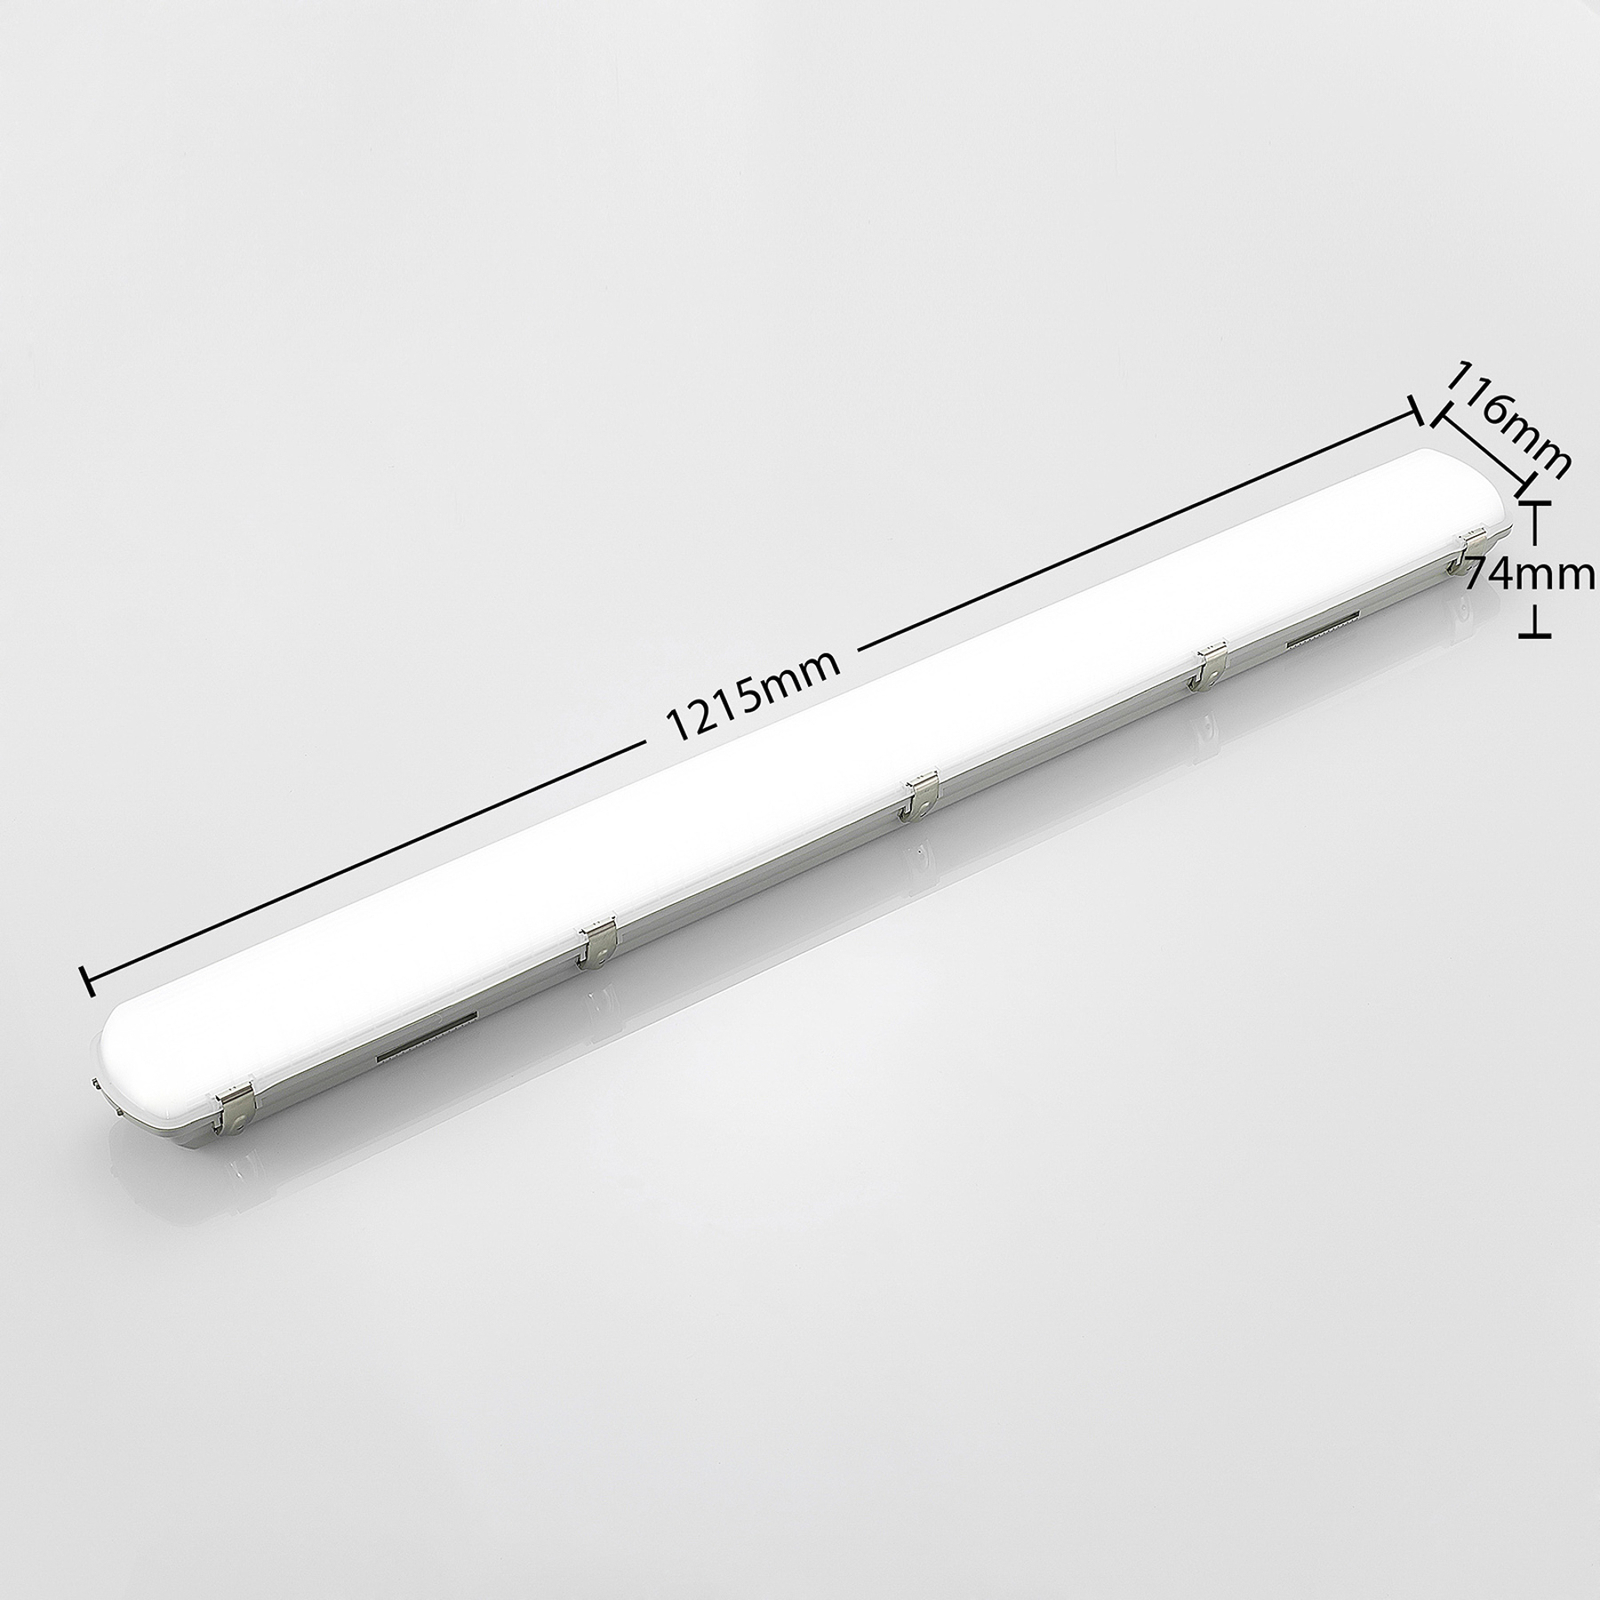 Φωτιστικό σώμα Arcchio Rao LED ανθεκτικό στην υγρασία, μήκος 121,5 cm, σετ